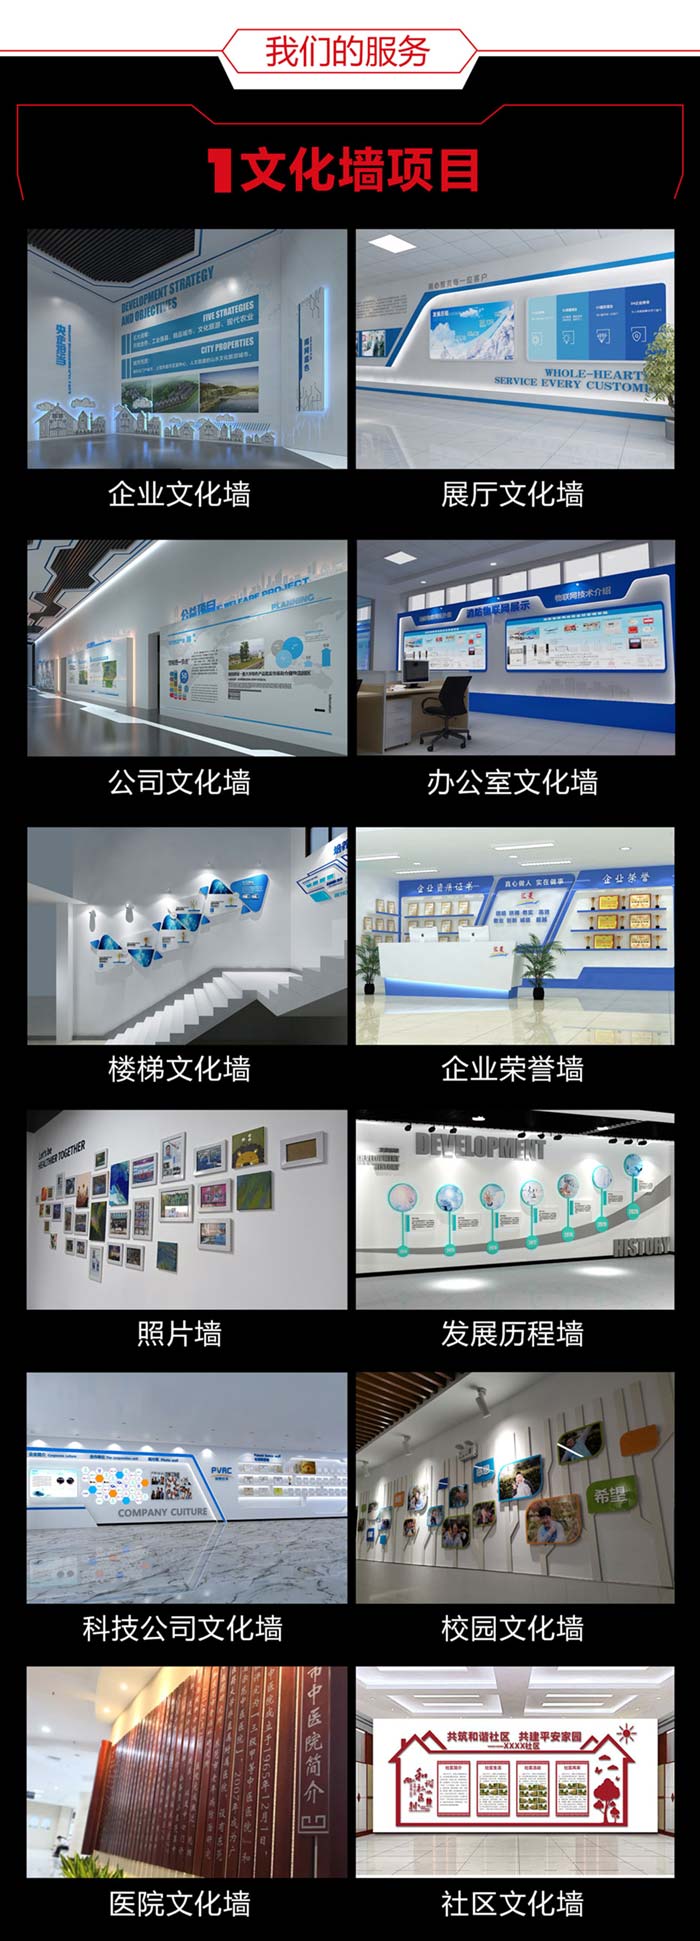 扬州扬州扬州文化墙设计详情页700切片图_04.jpg